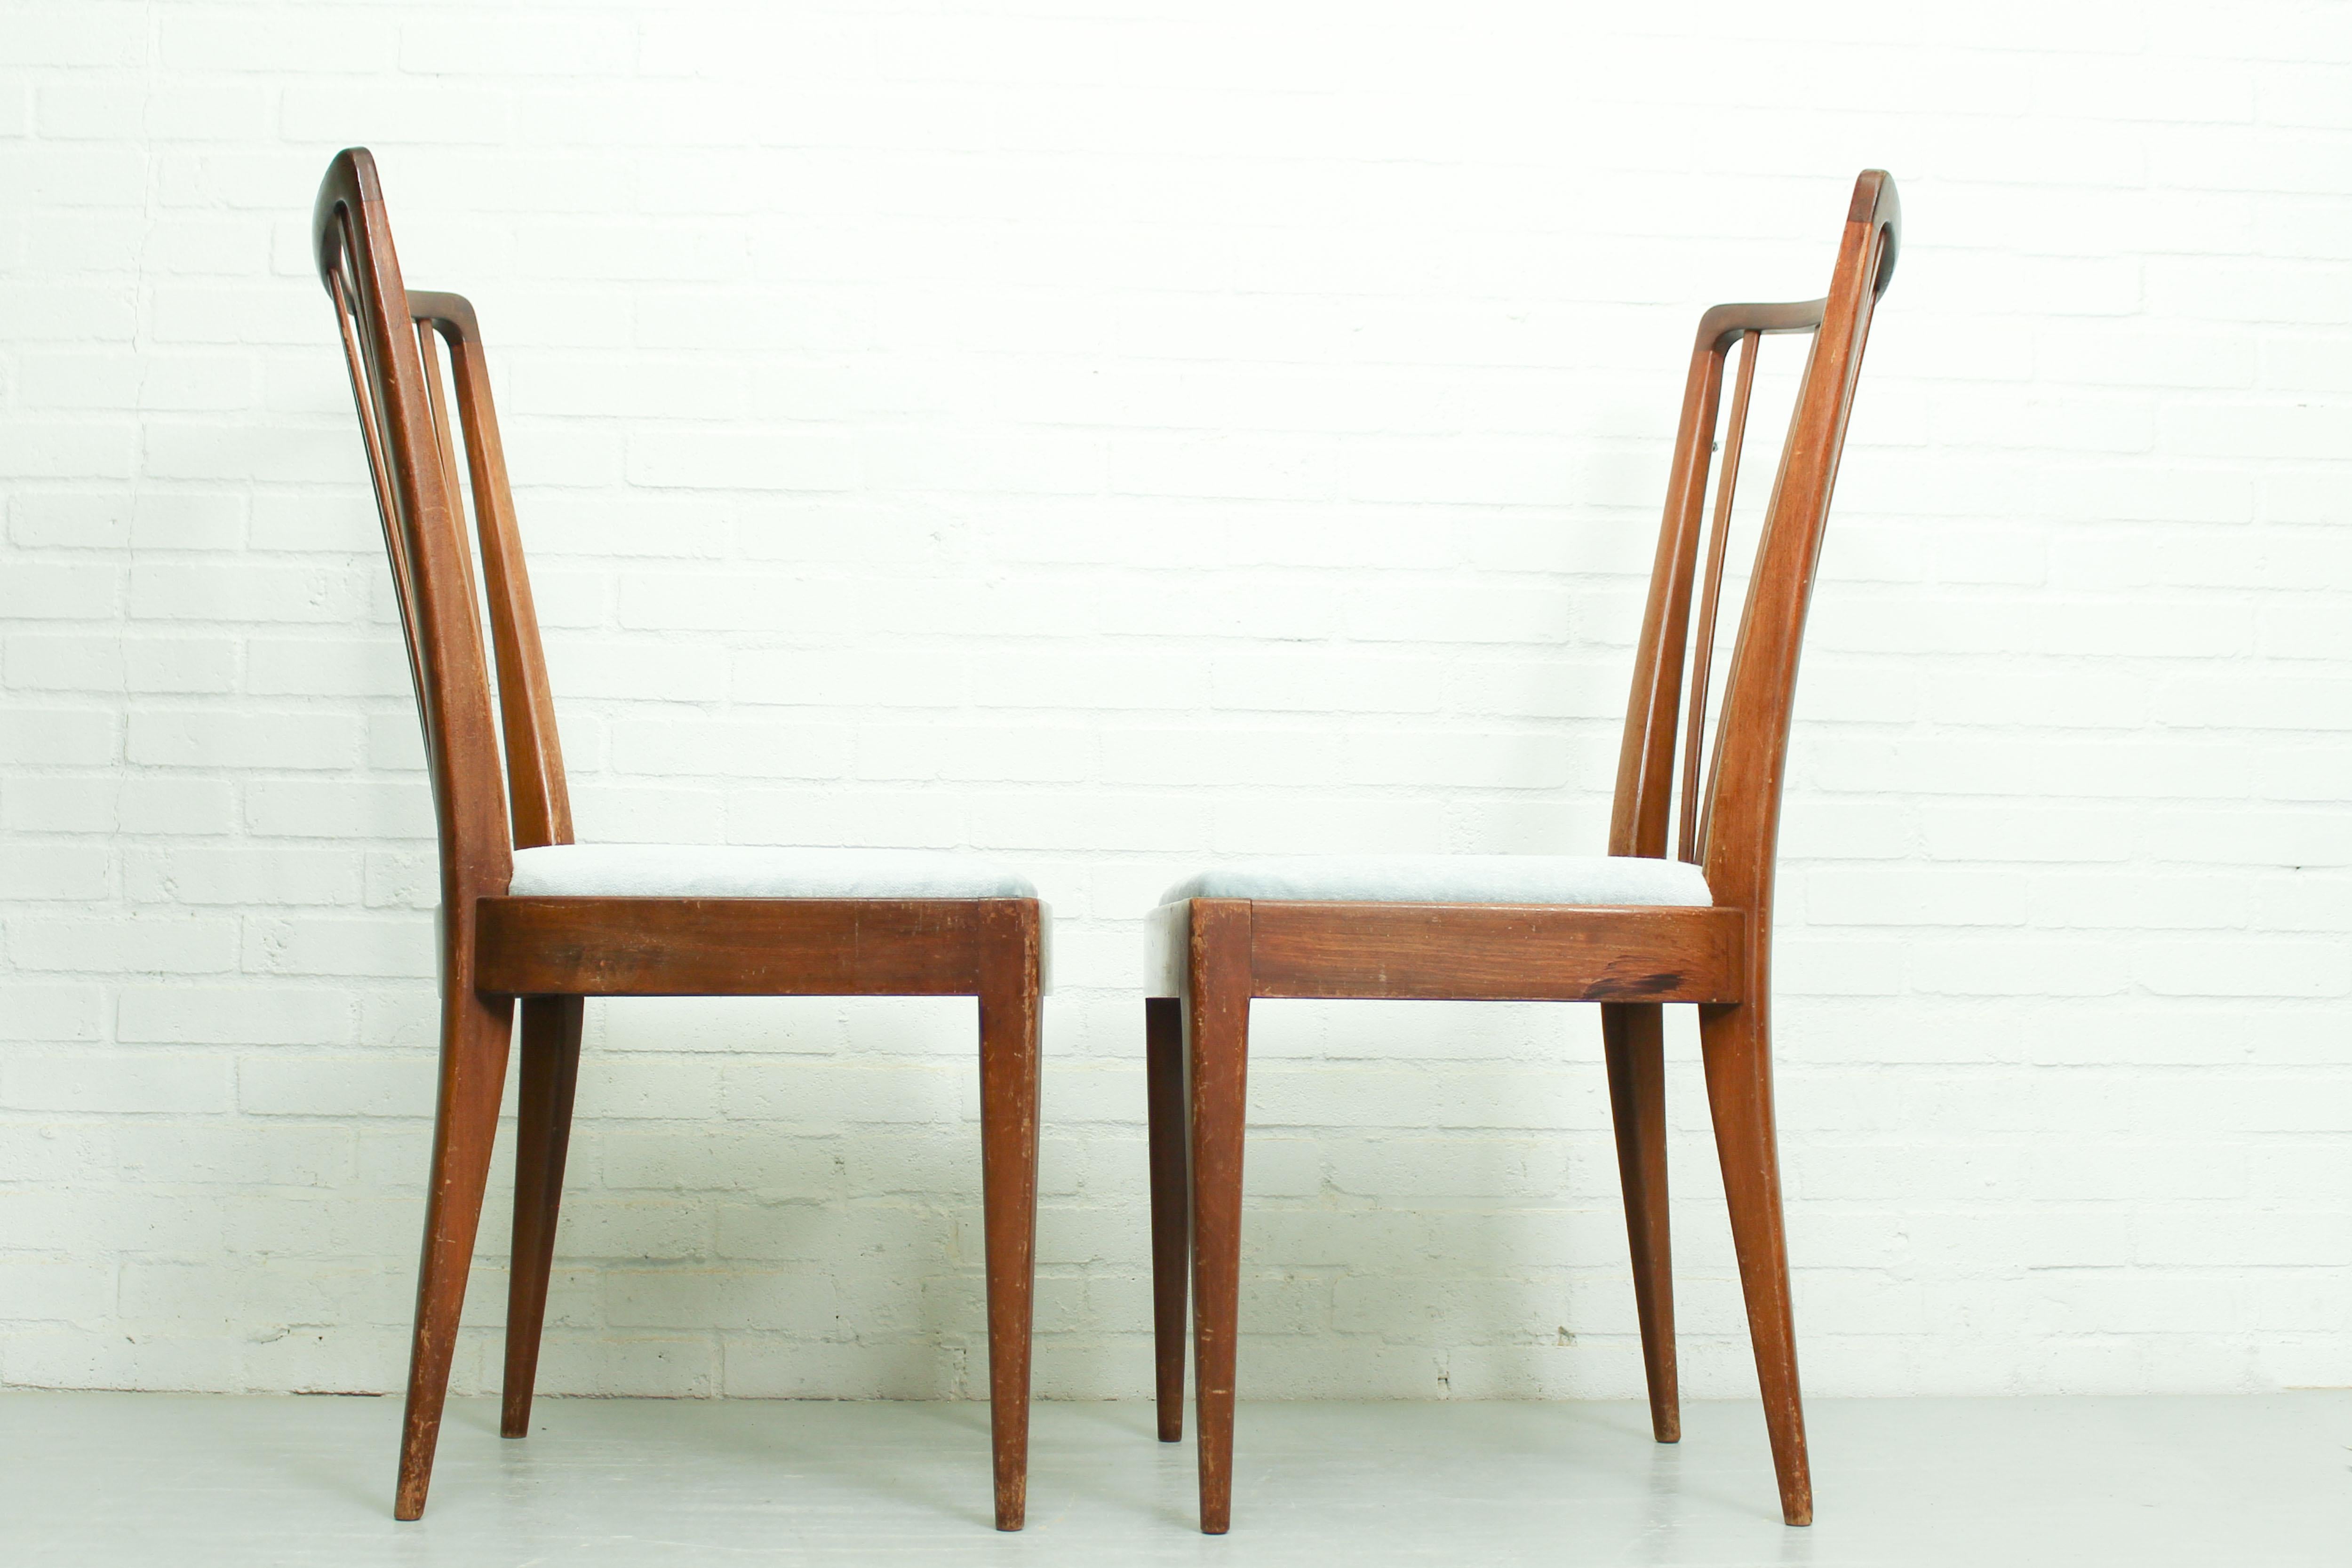 Ensemble de deux chaises de salle à manger conçues par Abraham A. Patijn pour Zijlstra Furniture aux Pays-Bas. Les chaises sont fabriquées en noyer et sont revêtues d'un magnifique tissu mohair bleu clair. Ce design est similaire à celui des chaises